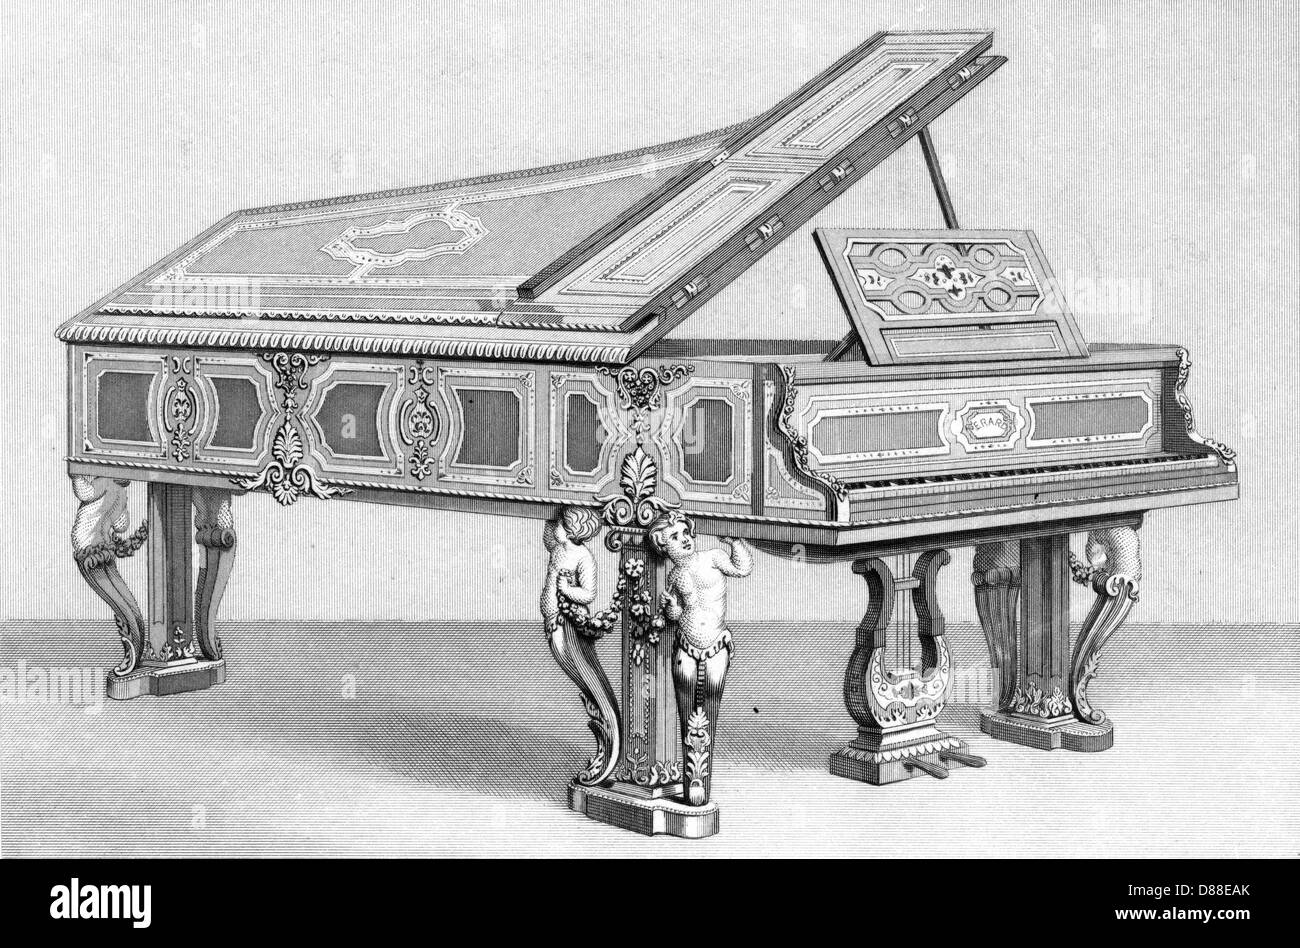 Erard's Grand Piano Stock Photo